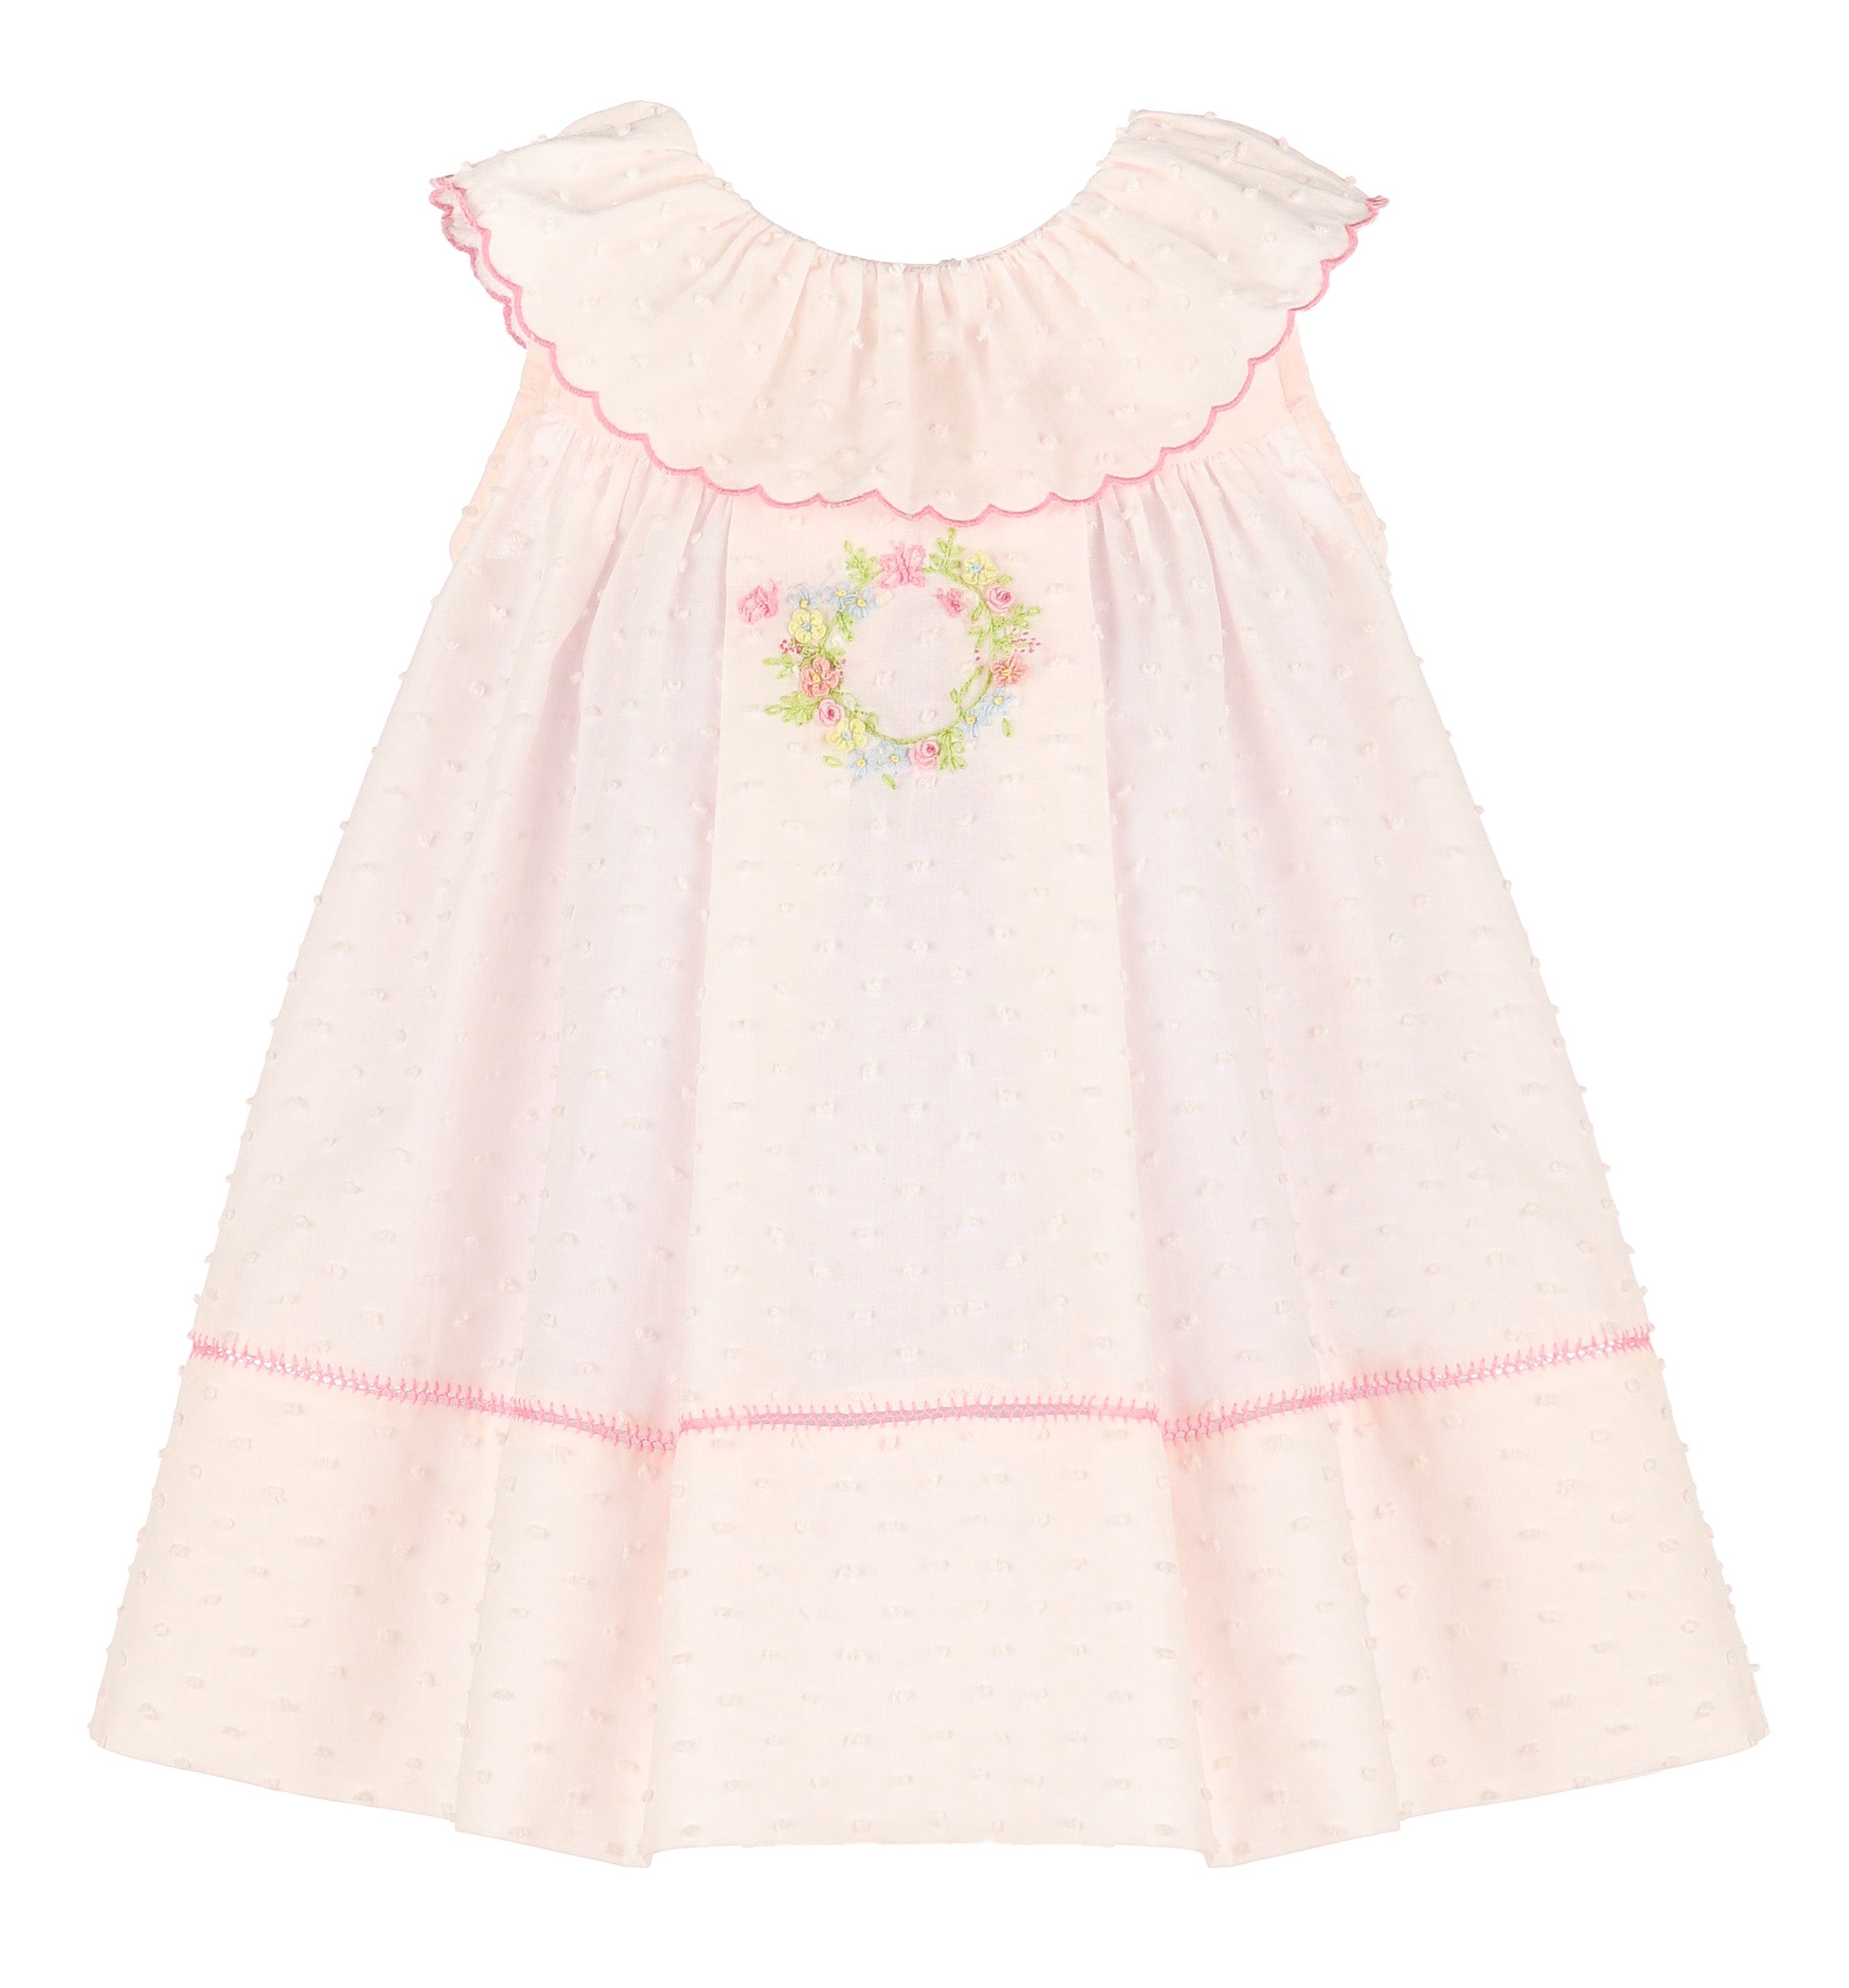 Casero & Associates Casero & Associates Lawn Party Ruffle Dress - Little Miss Muffin Children & Home